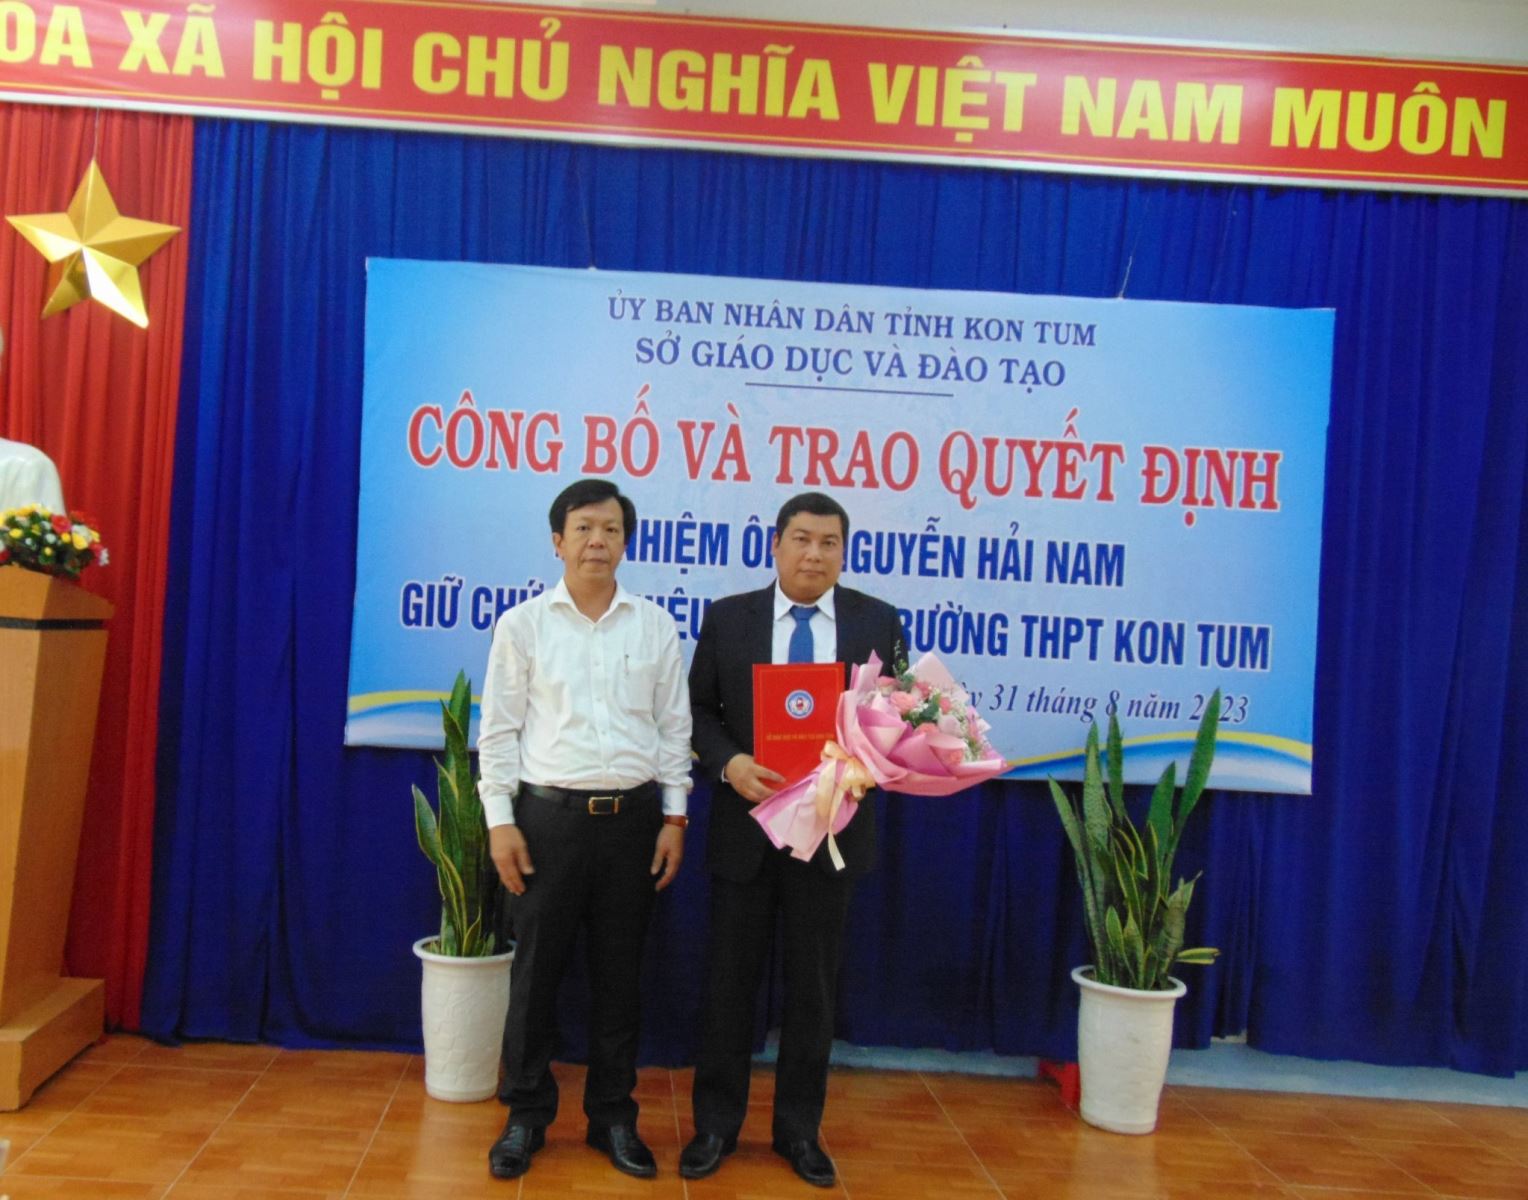 Công bố và trao quyết định điều động, bổ nhiệm hiệu trưởng trường THPT Kon Tum